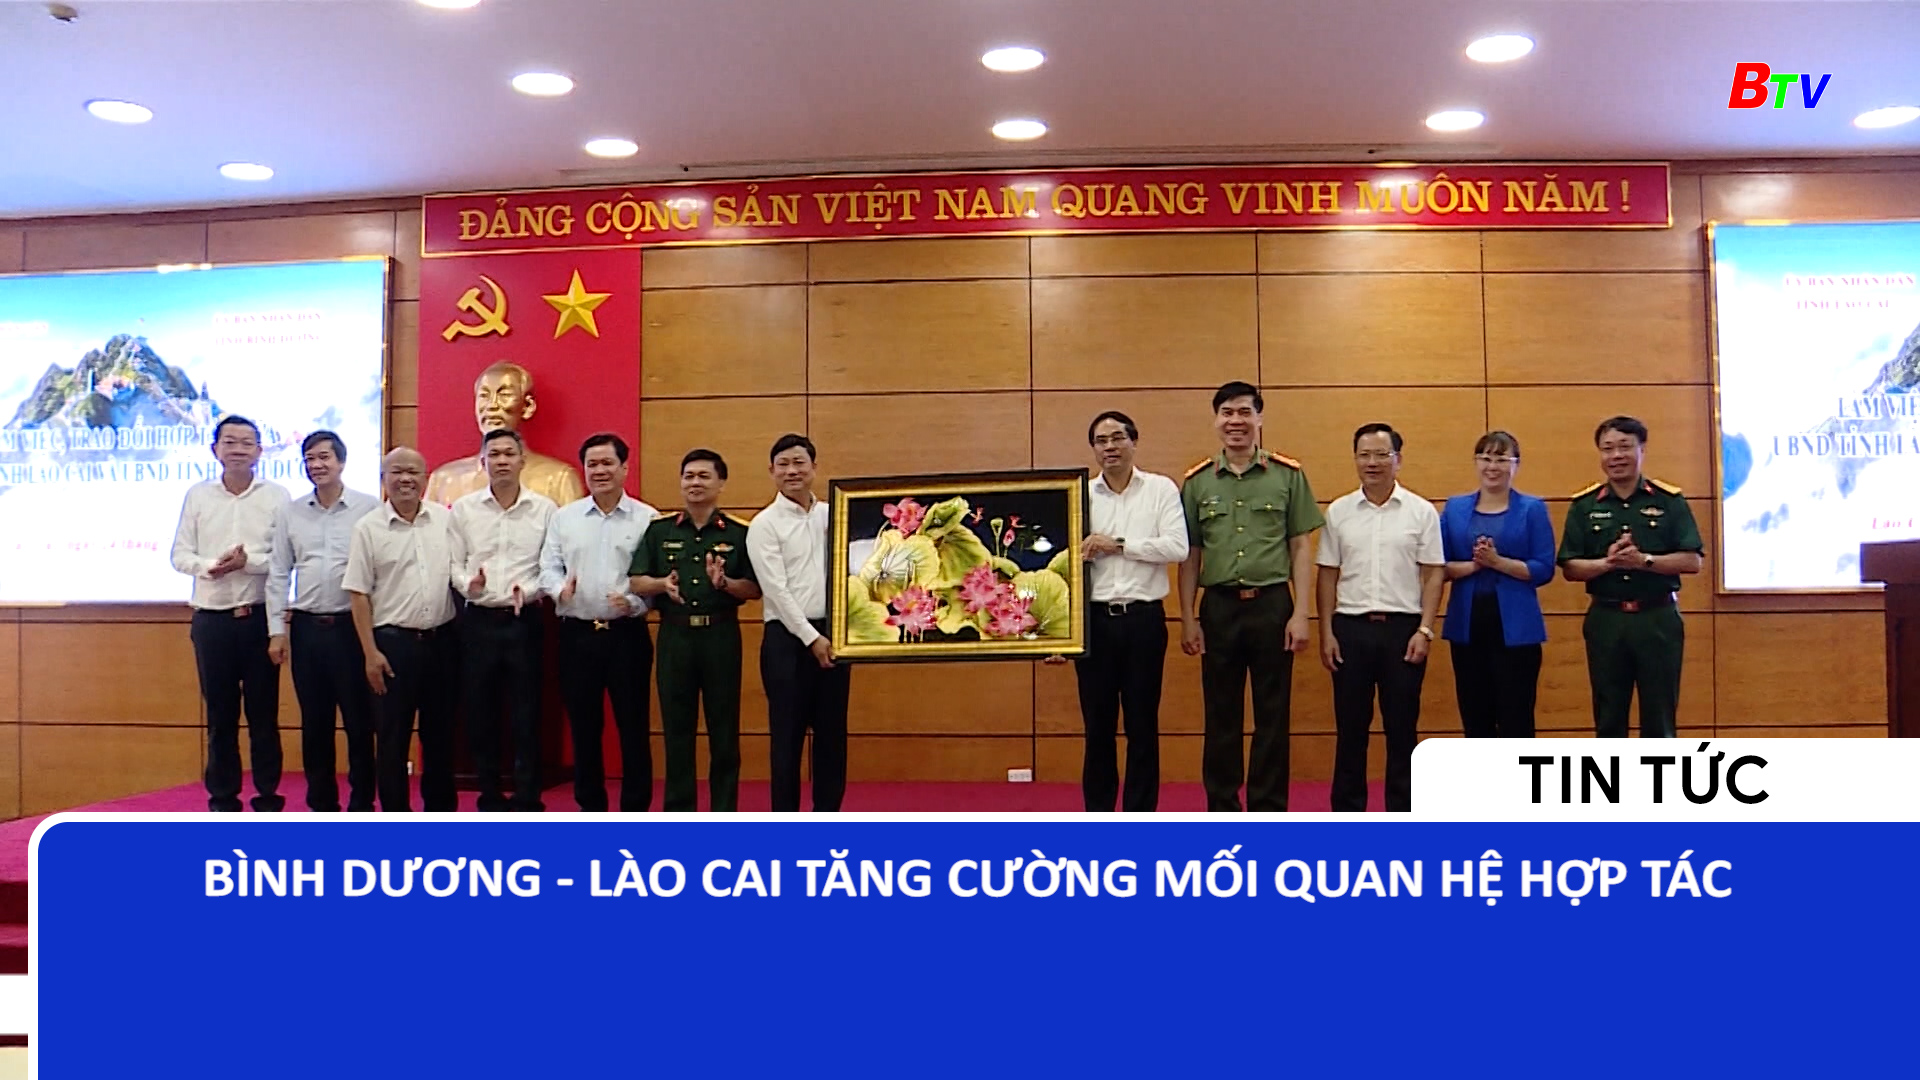 Bình Dương - Lào Cai tăng cường mối quan hệ hợp tác